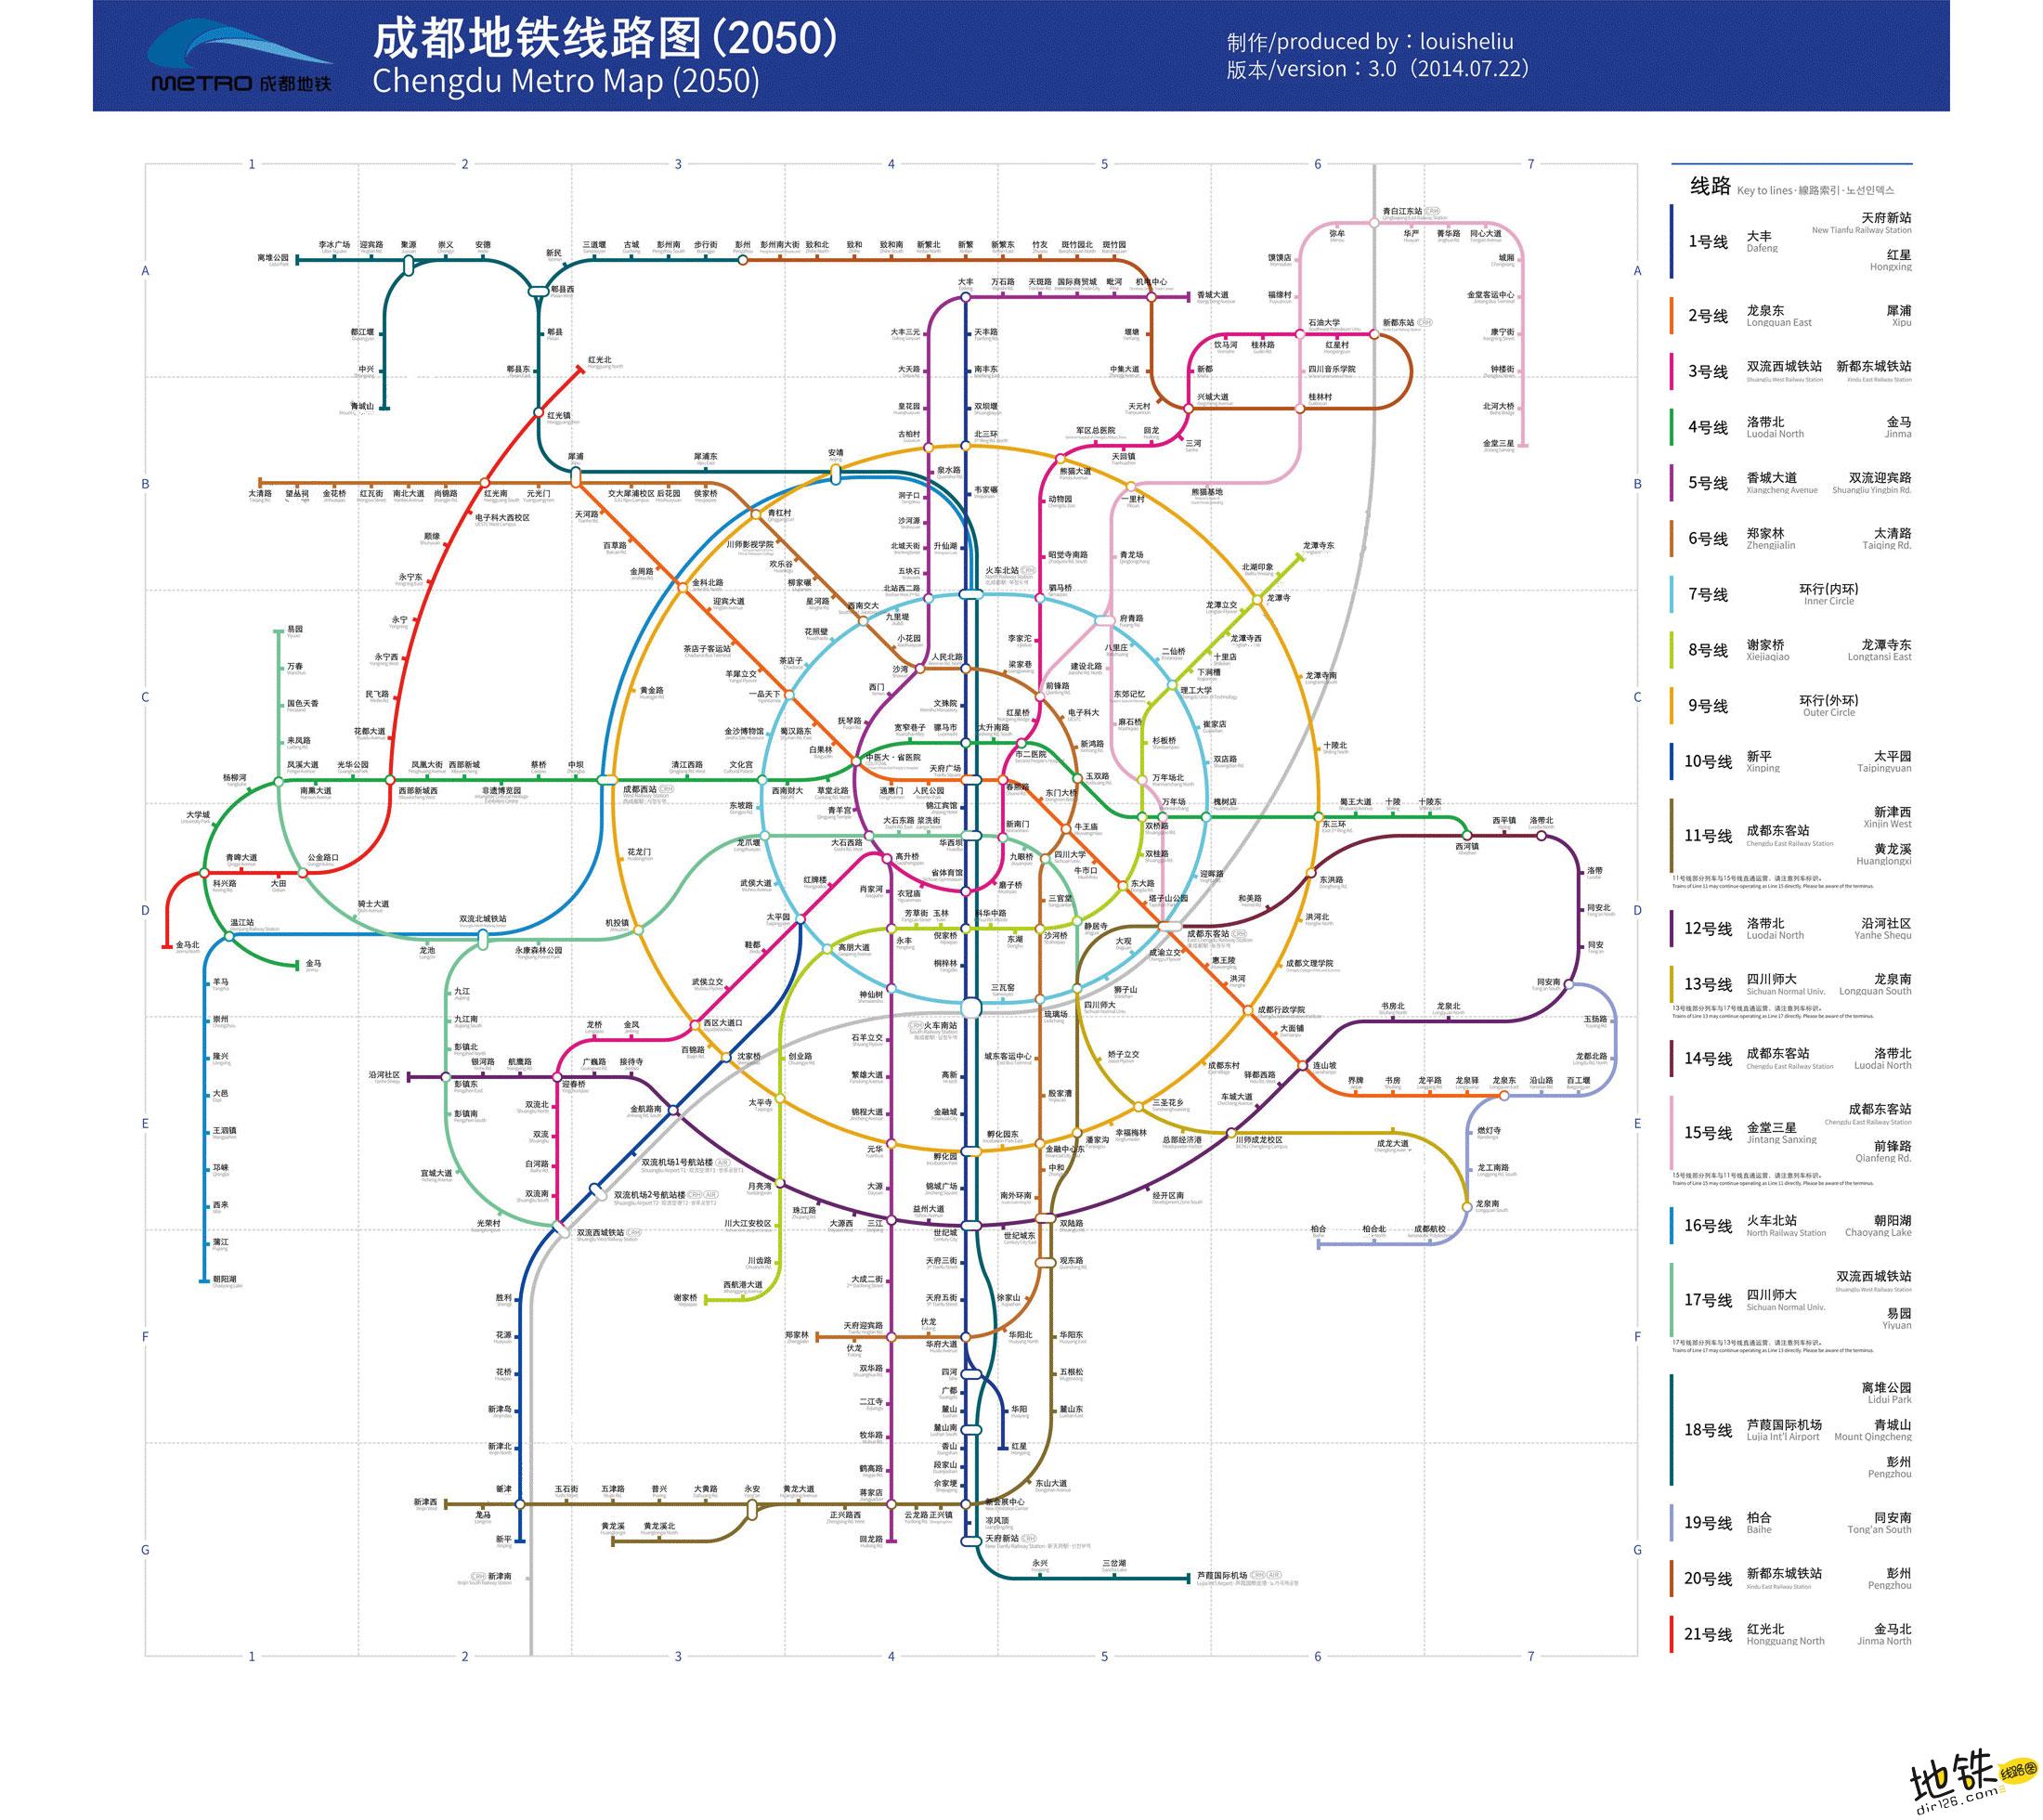 官方版(注:点击图片可查看下载大图)成都地铁2050年线路规划图(注